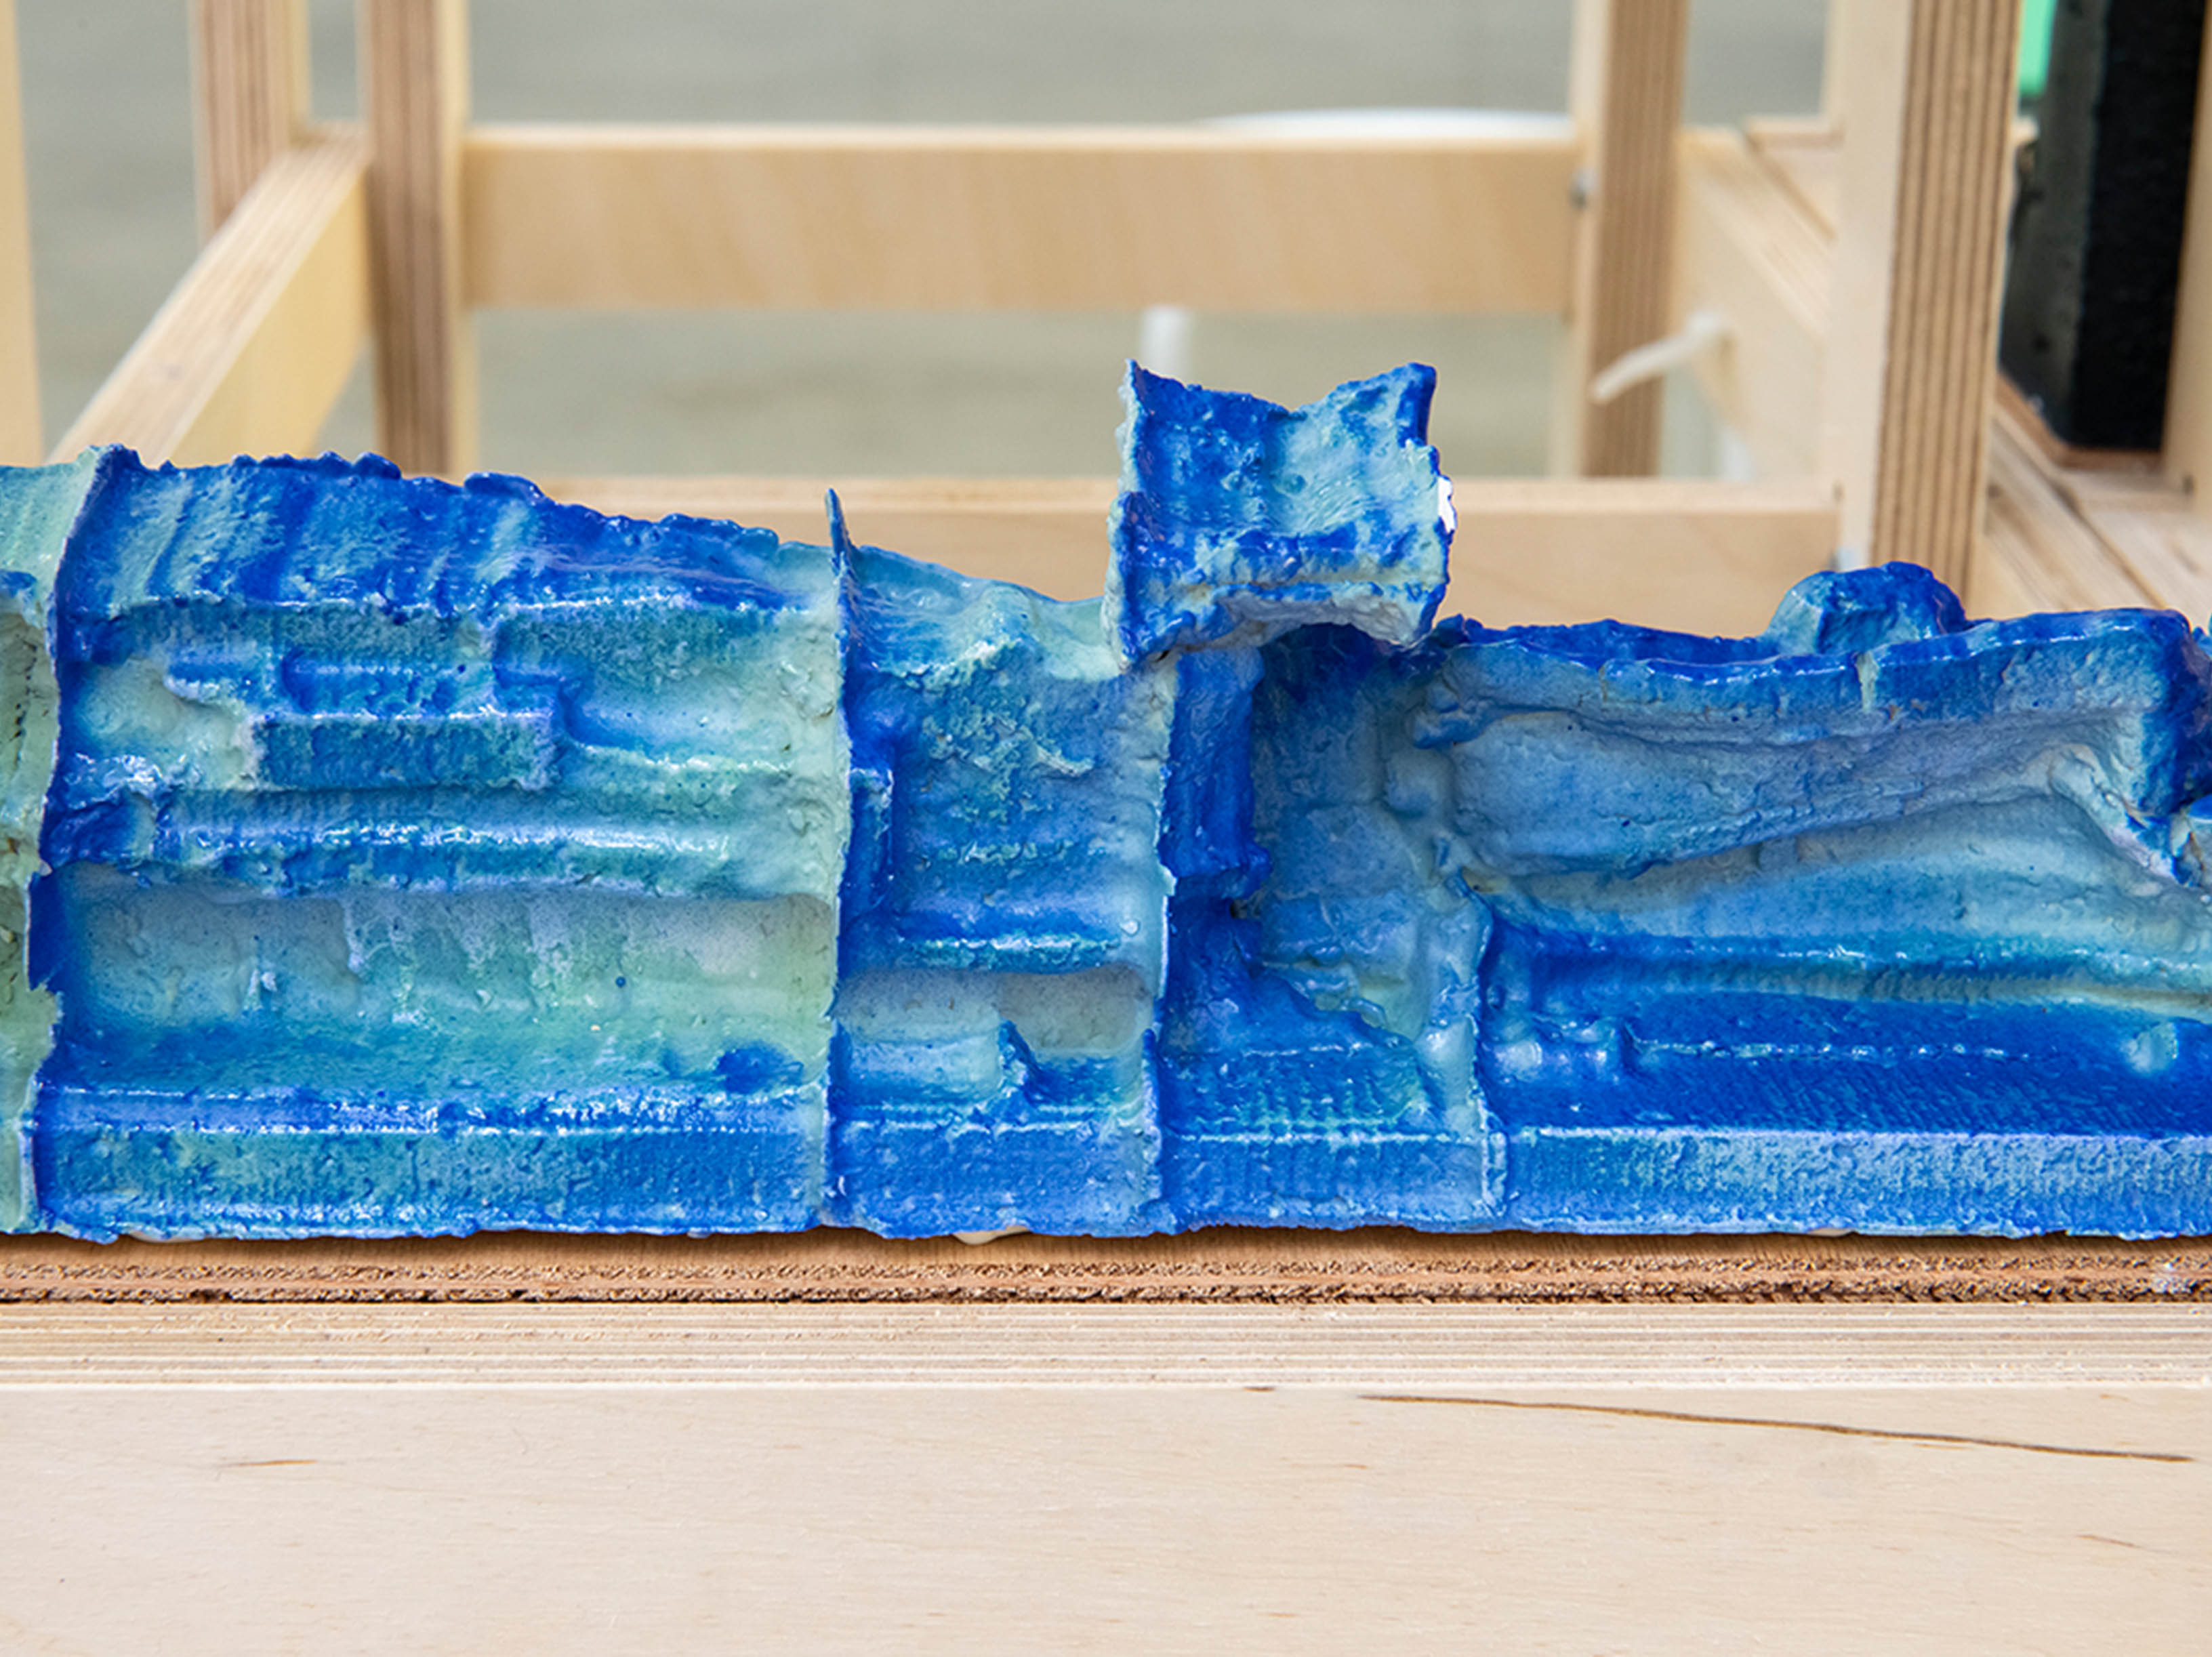 Blocks of blue-glazed ceramic structures resting inside of a wooden frame.